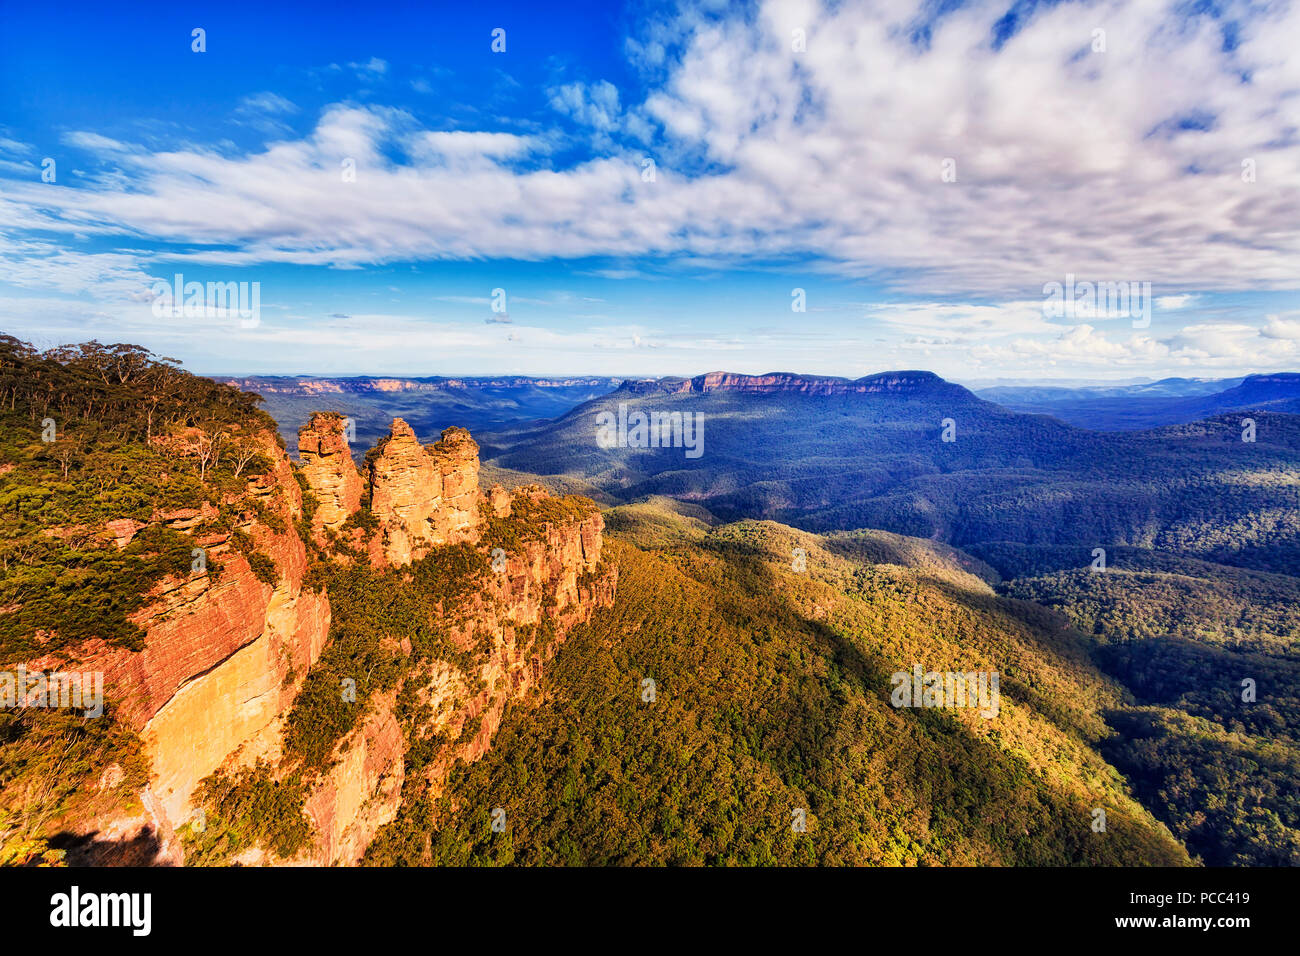 Trois sœurs rock cliffs natural monument avec Mt La solitude dans une distance plus grande valley vu de Echo Point Lookout à Katoomba town - pe bleu Banque D'Images